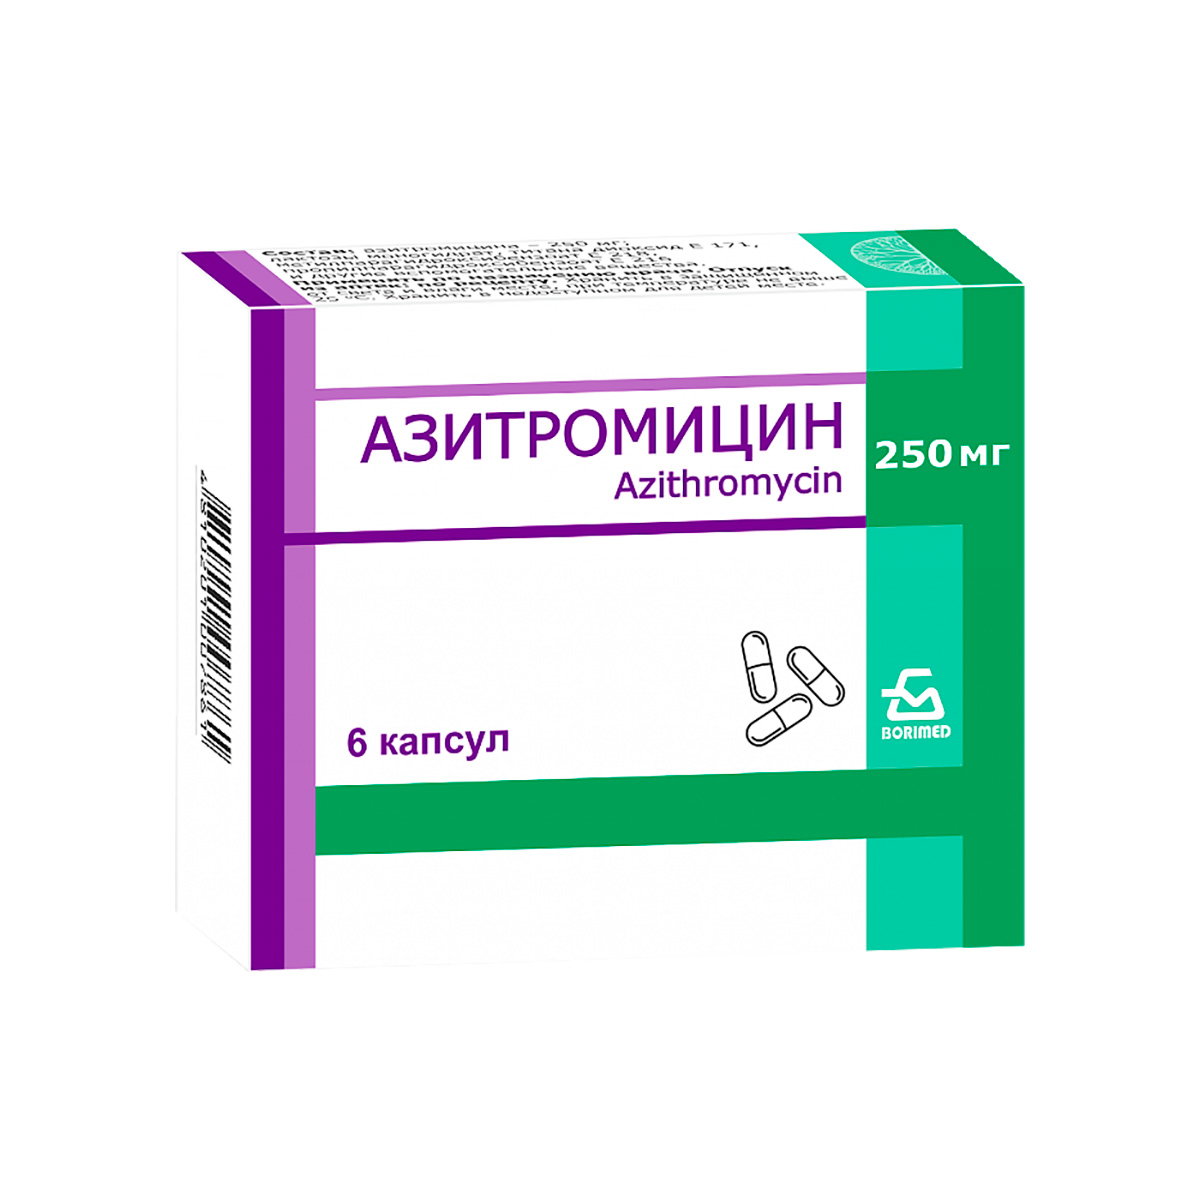 Азитромицин 250 мг капсулы 6 шт